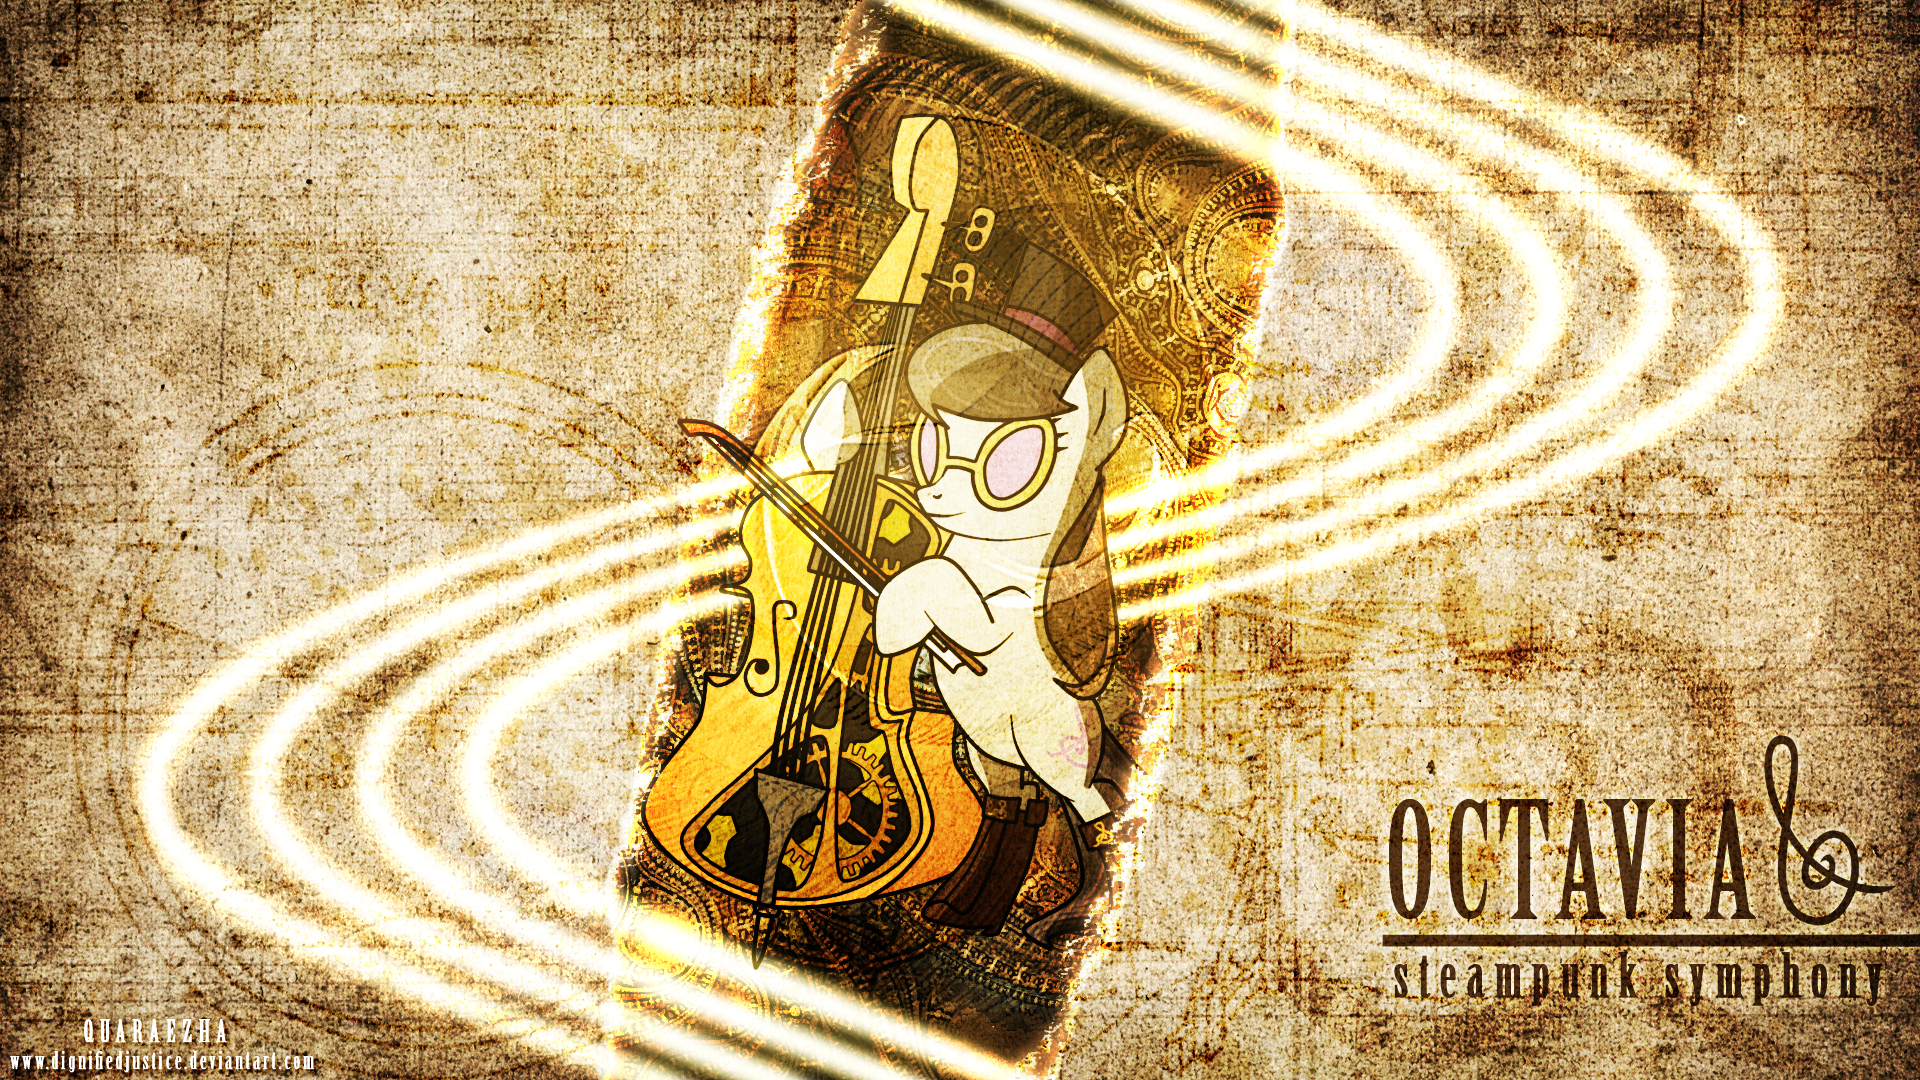 Octavia Steampunk Symphony by FilipinoNinja95, MaximillianVeers and Paradigm-Zero